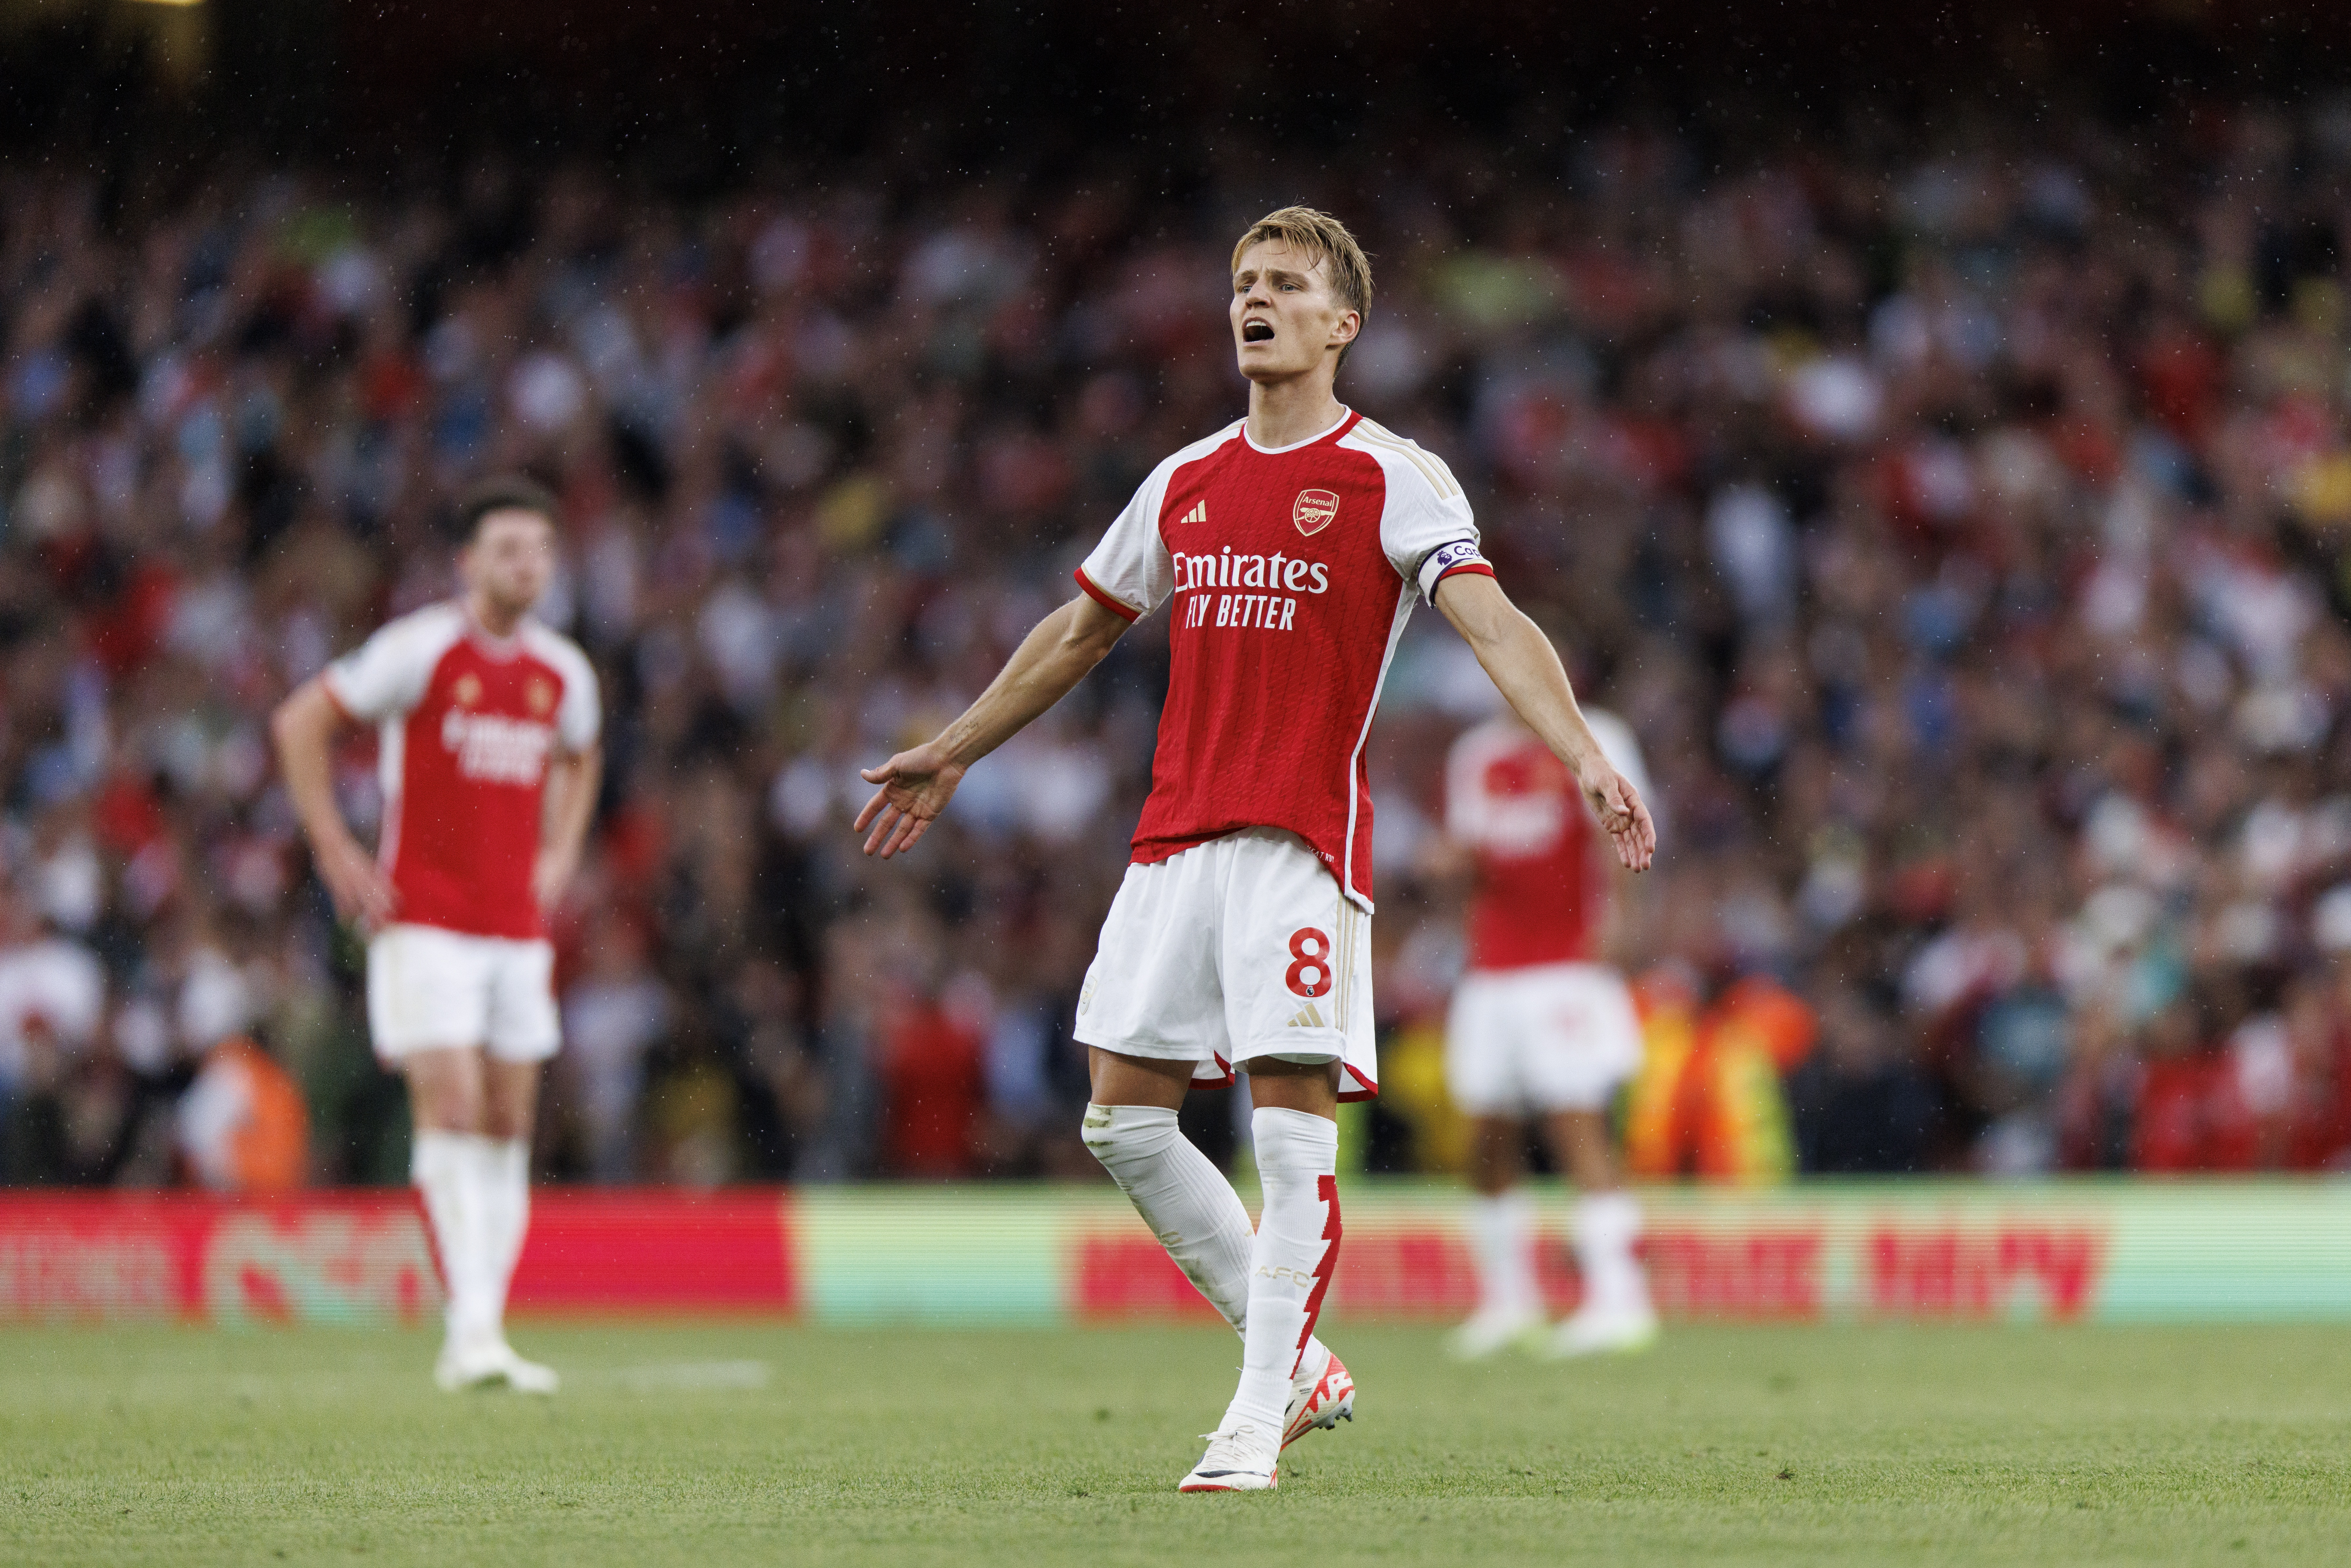 Arsenal verspielte in der zweiten Halbzeit einen 2:1-Vorsprung, nachdem er einen 0:1-Rückstand aufgeholt hatte